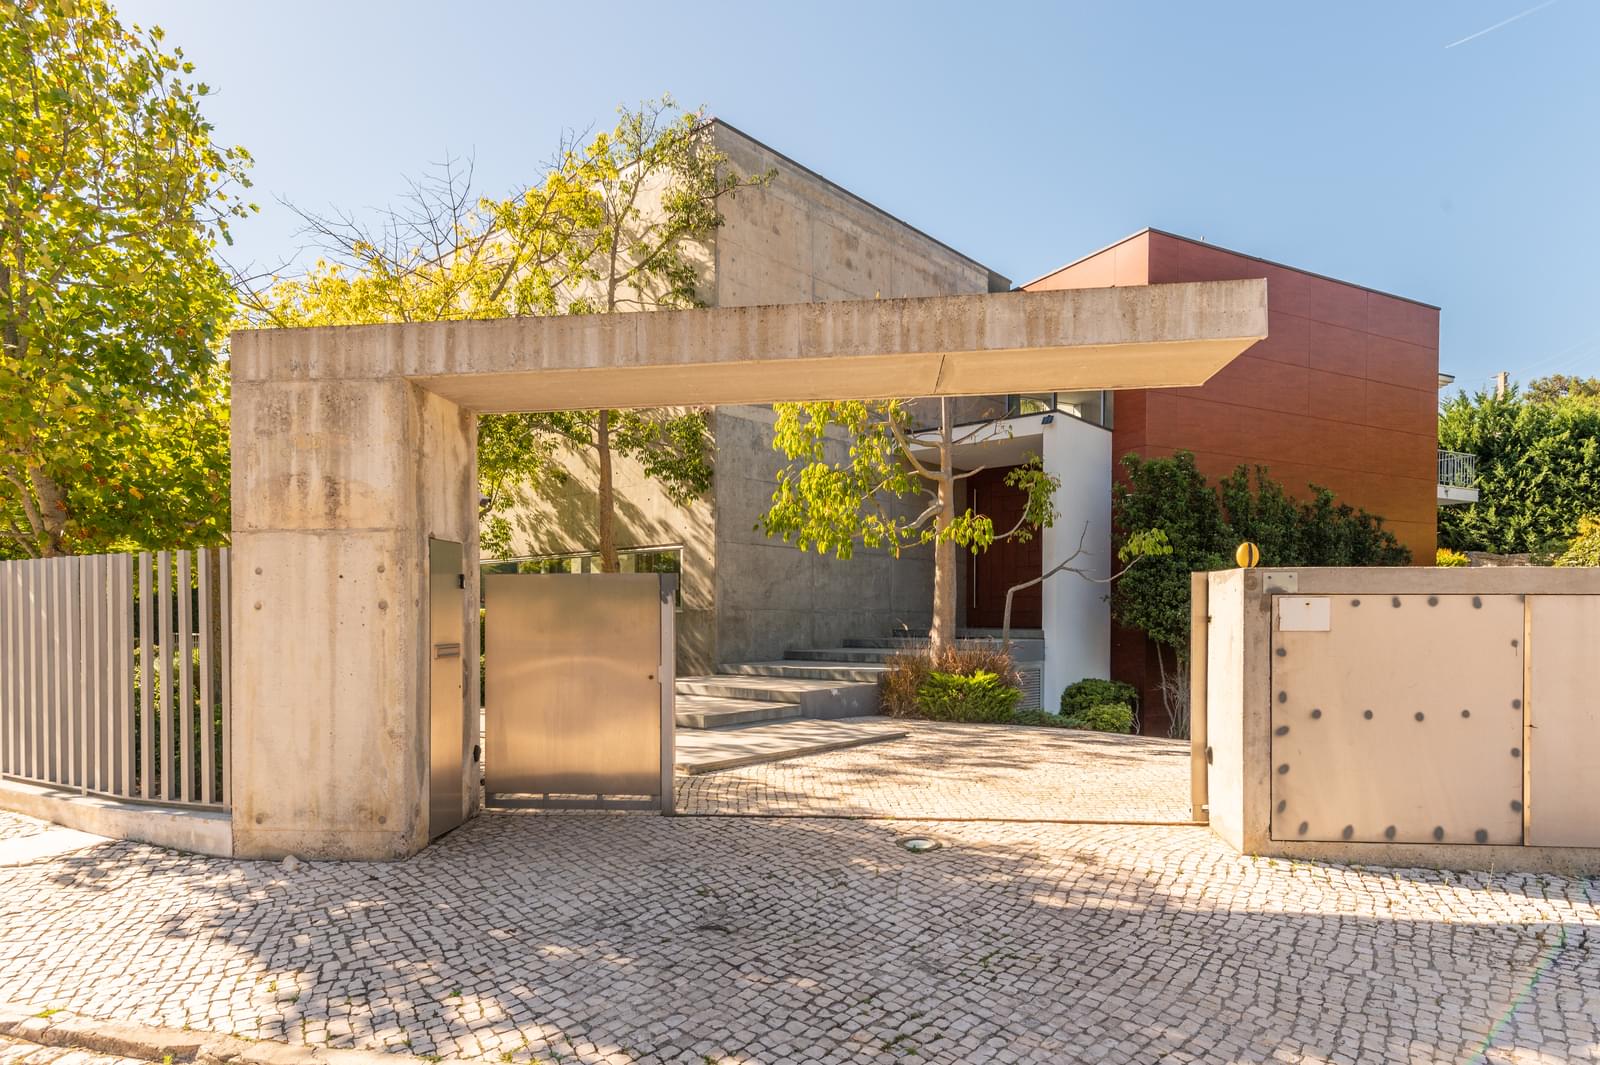 Villa for sale in Cascais and Estoril 3